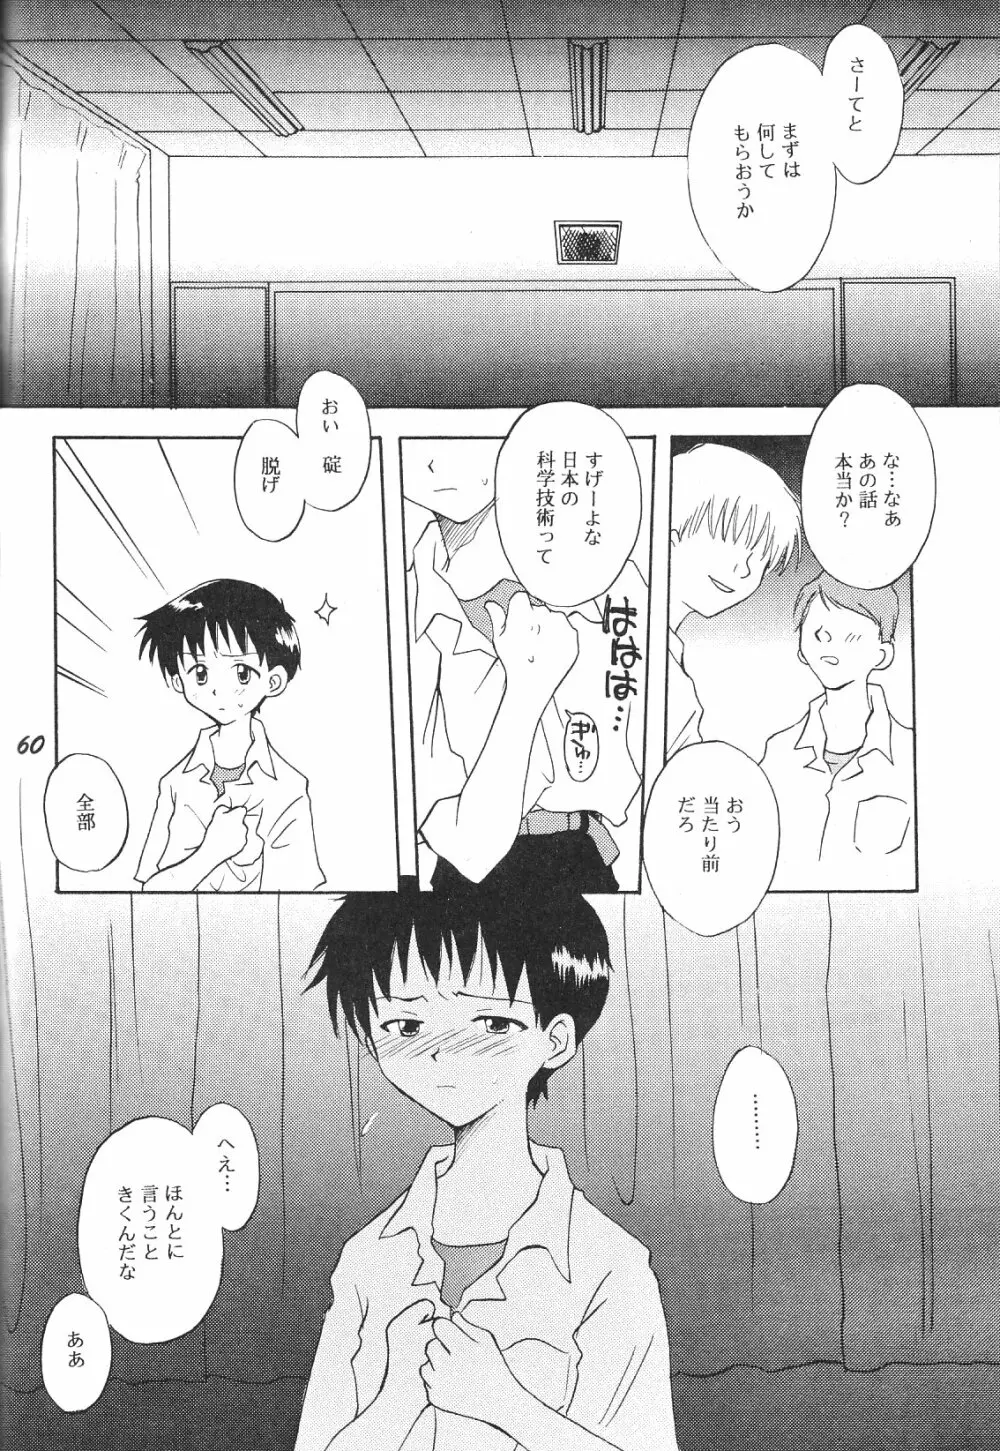 Maniac Juice 女シンジ再録集 '96-'99 - page60